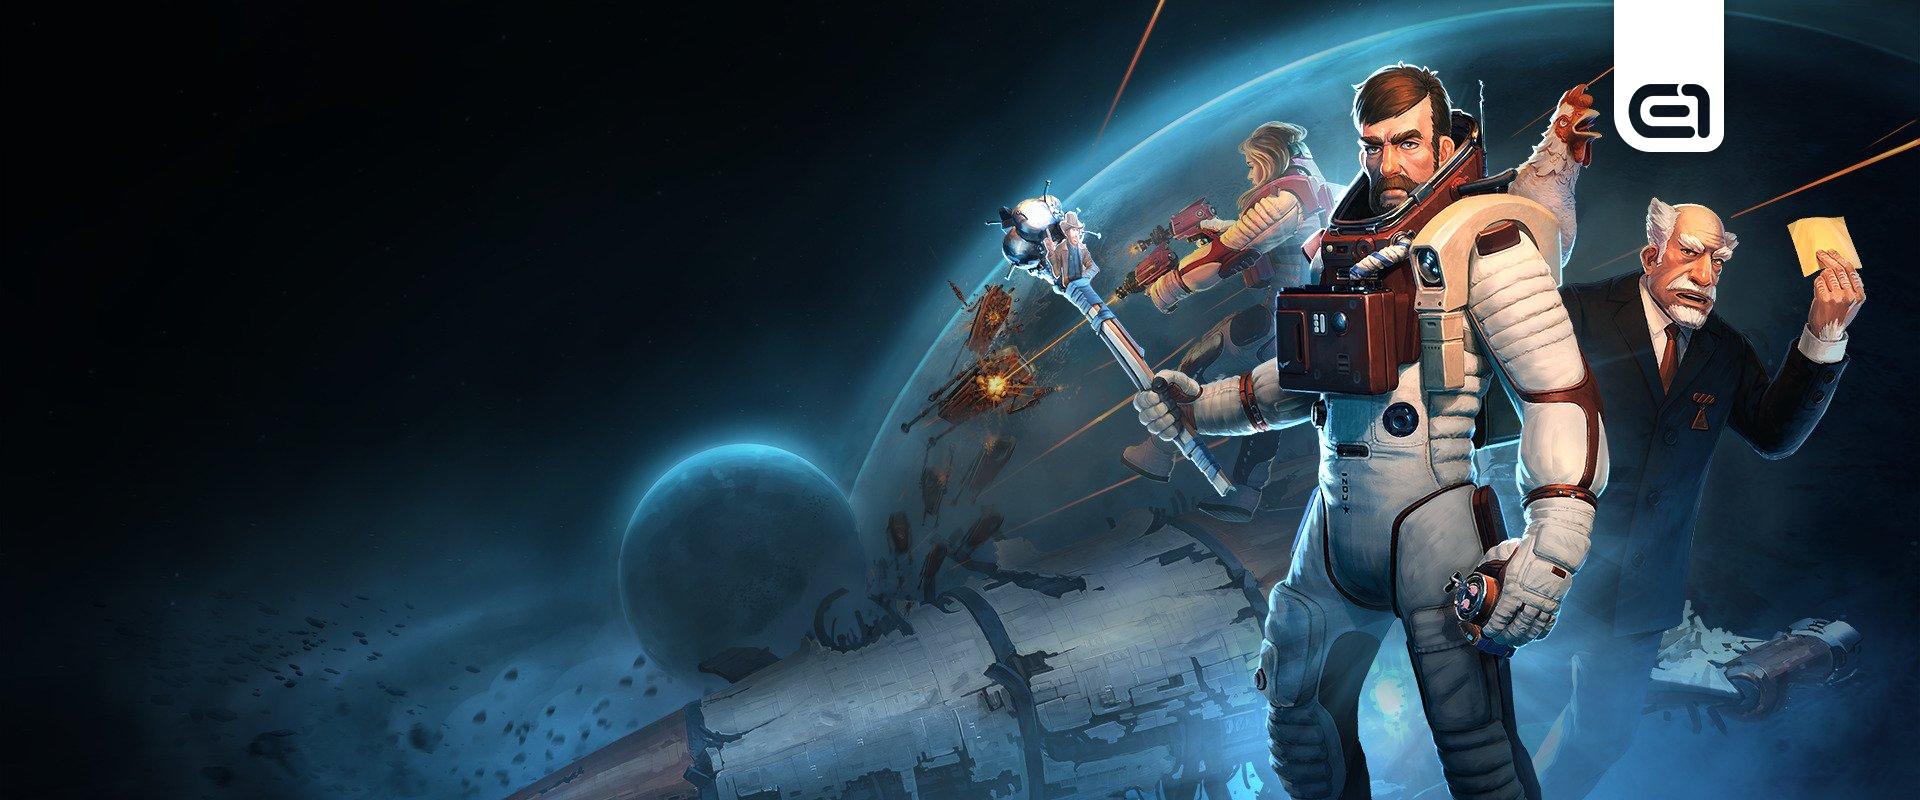 Képes lennél túlélni az űrben? – Az Epic jövő heti ingyenes játékából kiderül